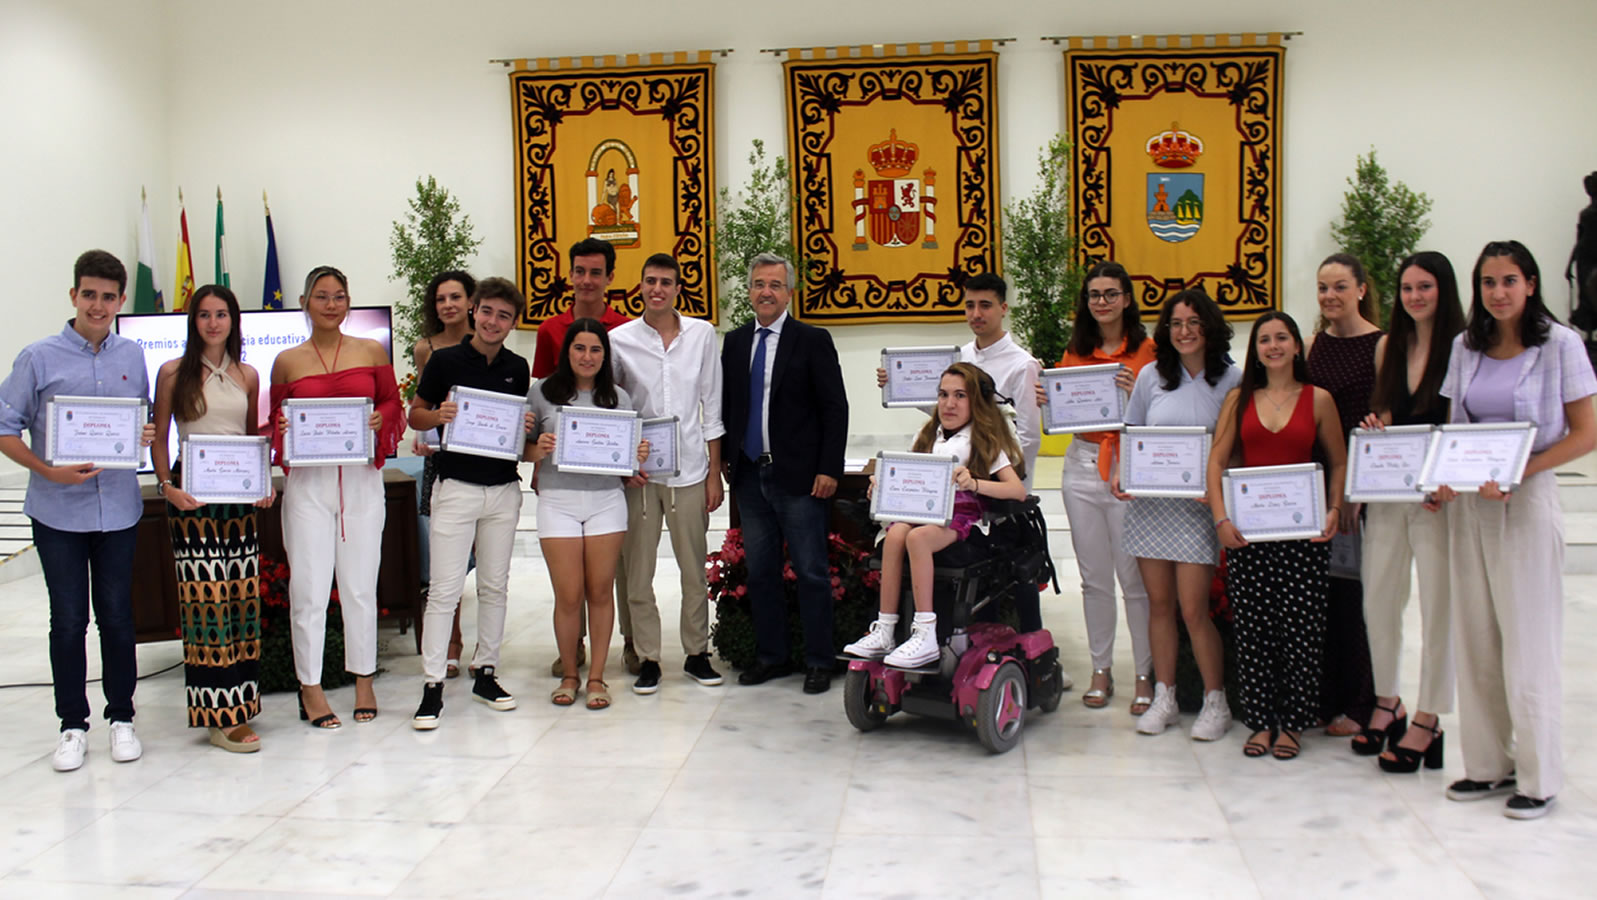 Imagen de la noticia: Entrega de los IX Premios a la Excelencia Educativa del Ayuntamiento de Estepona [Actualizado]